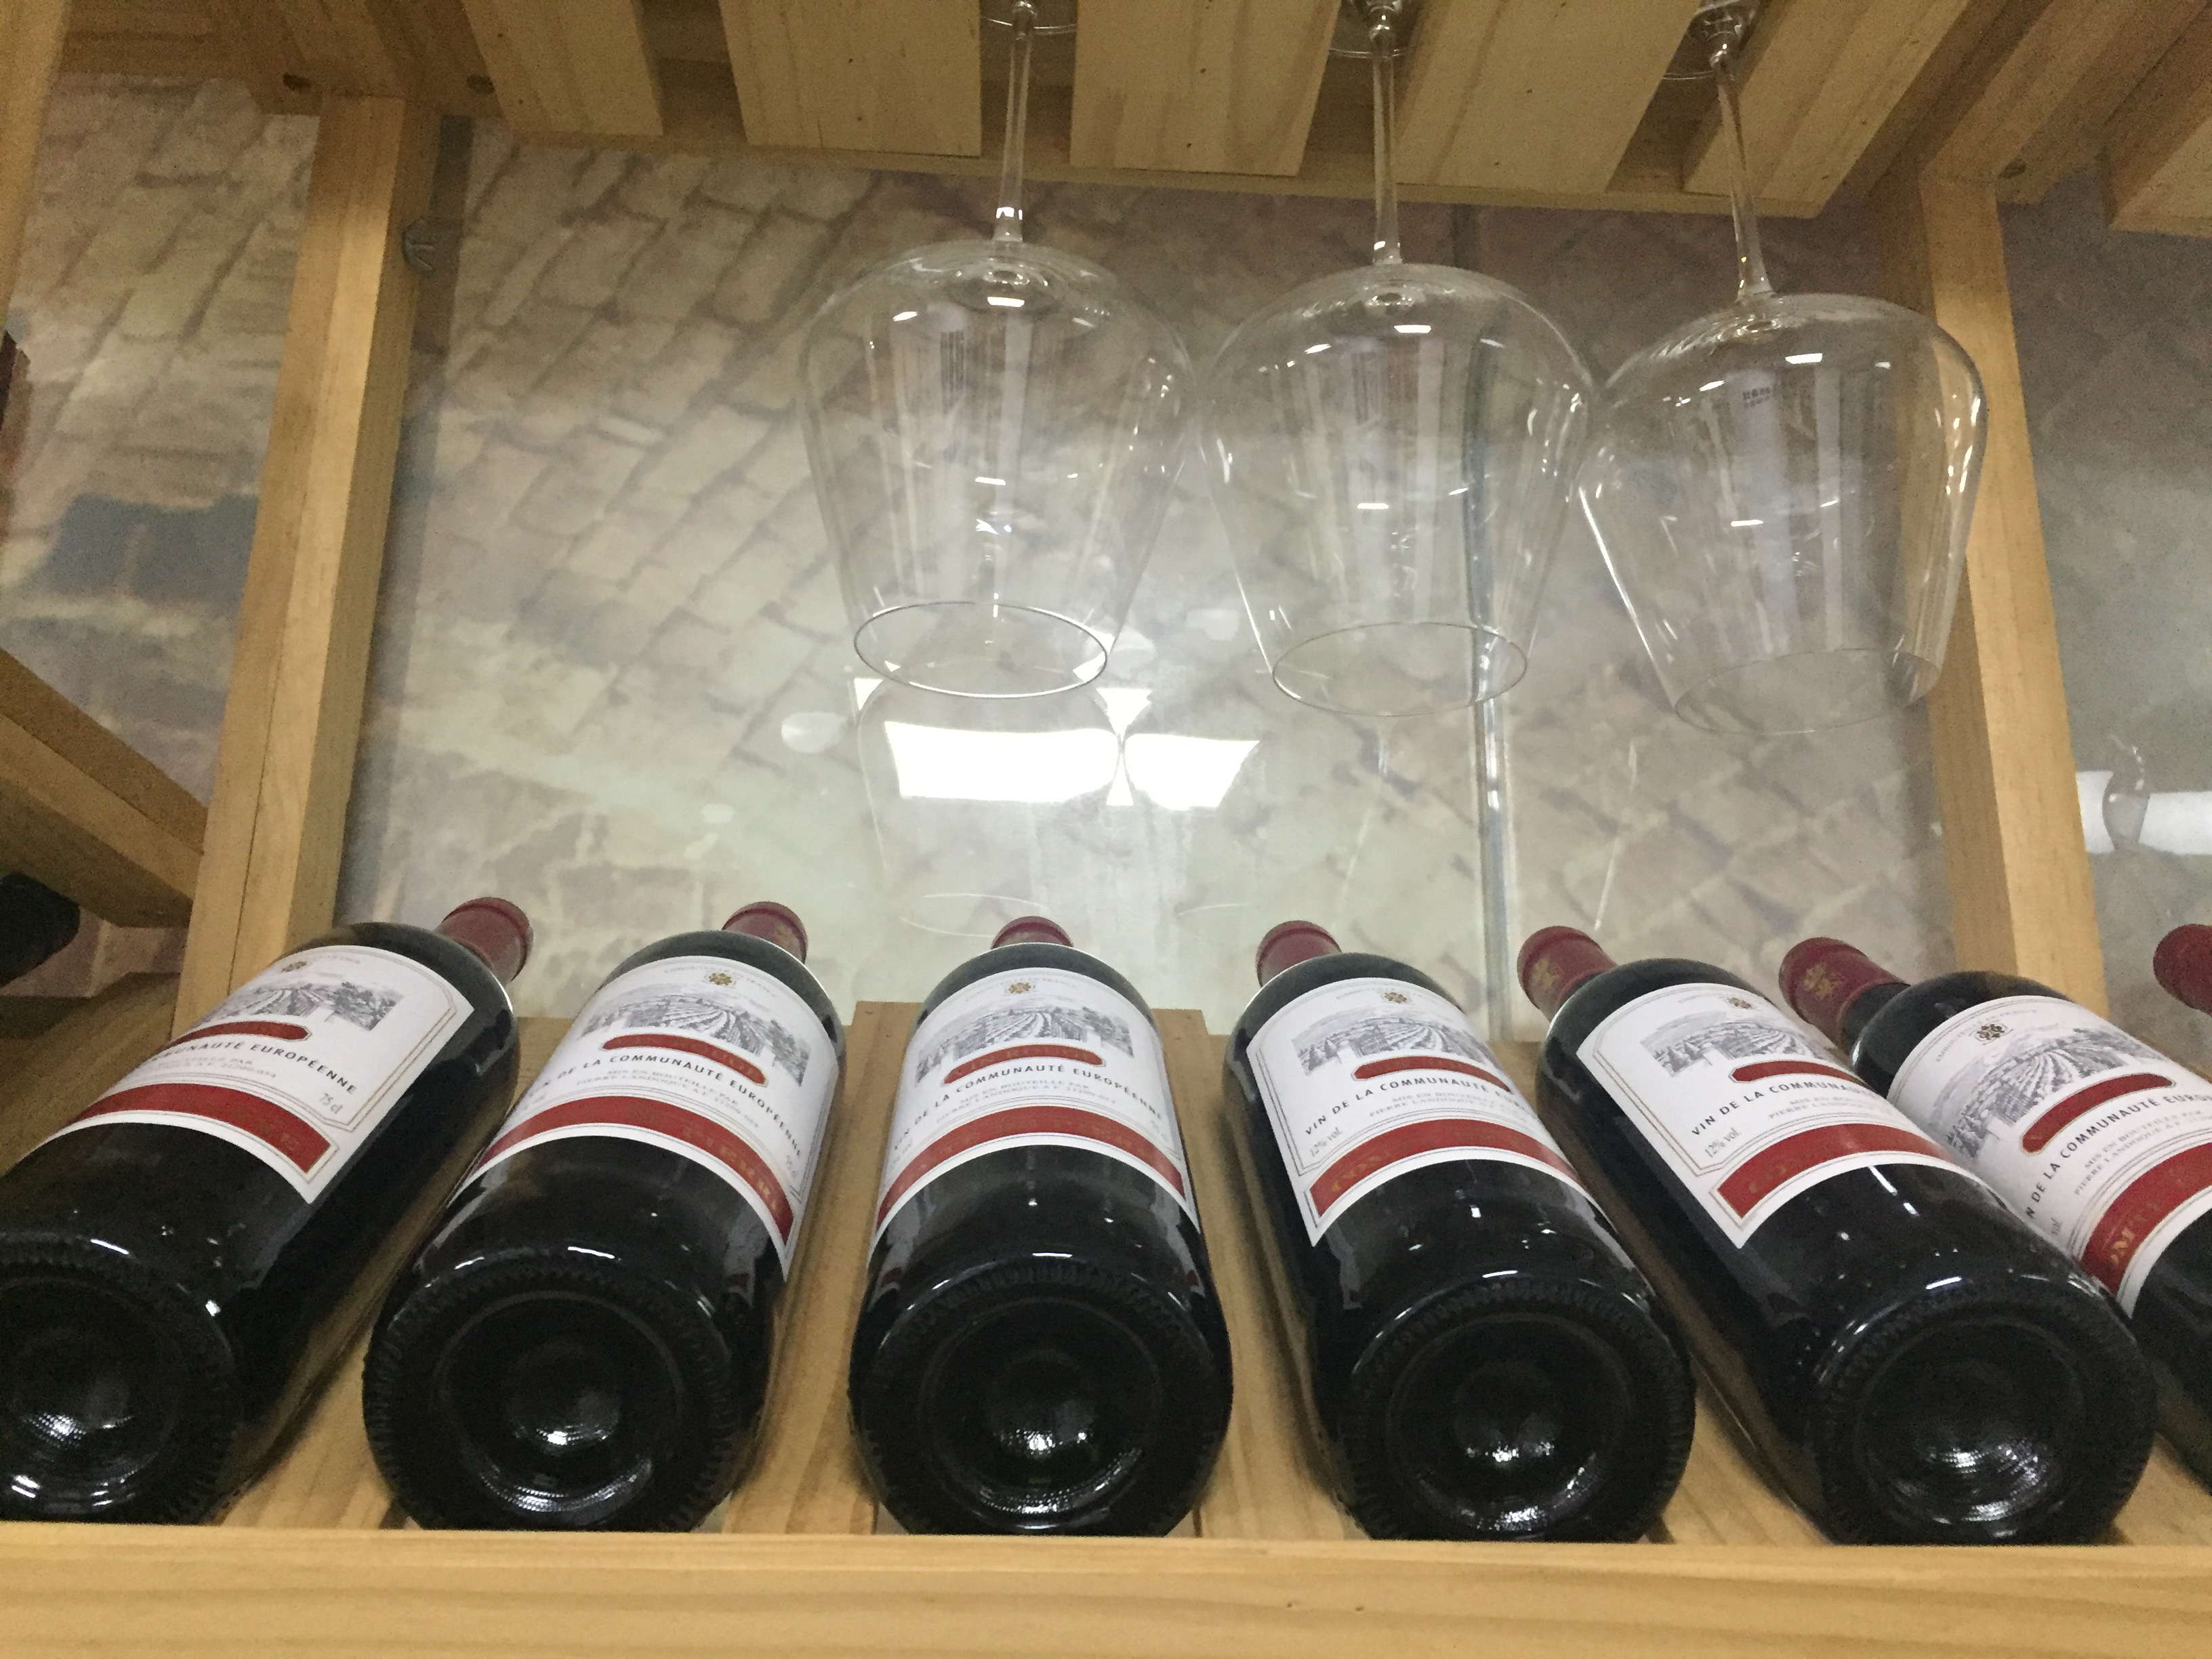 山西销售西班牙原装进口葡萄酒 现面向全国招代理 经销商